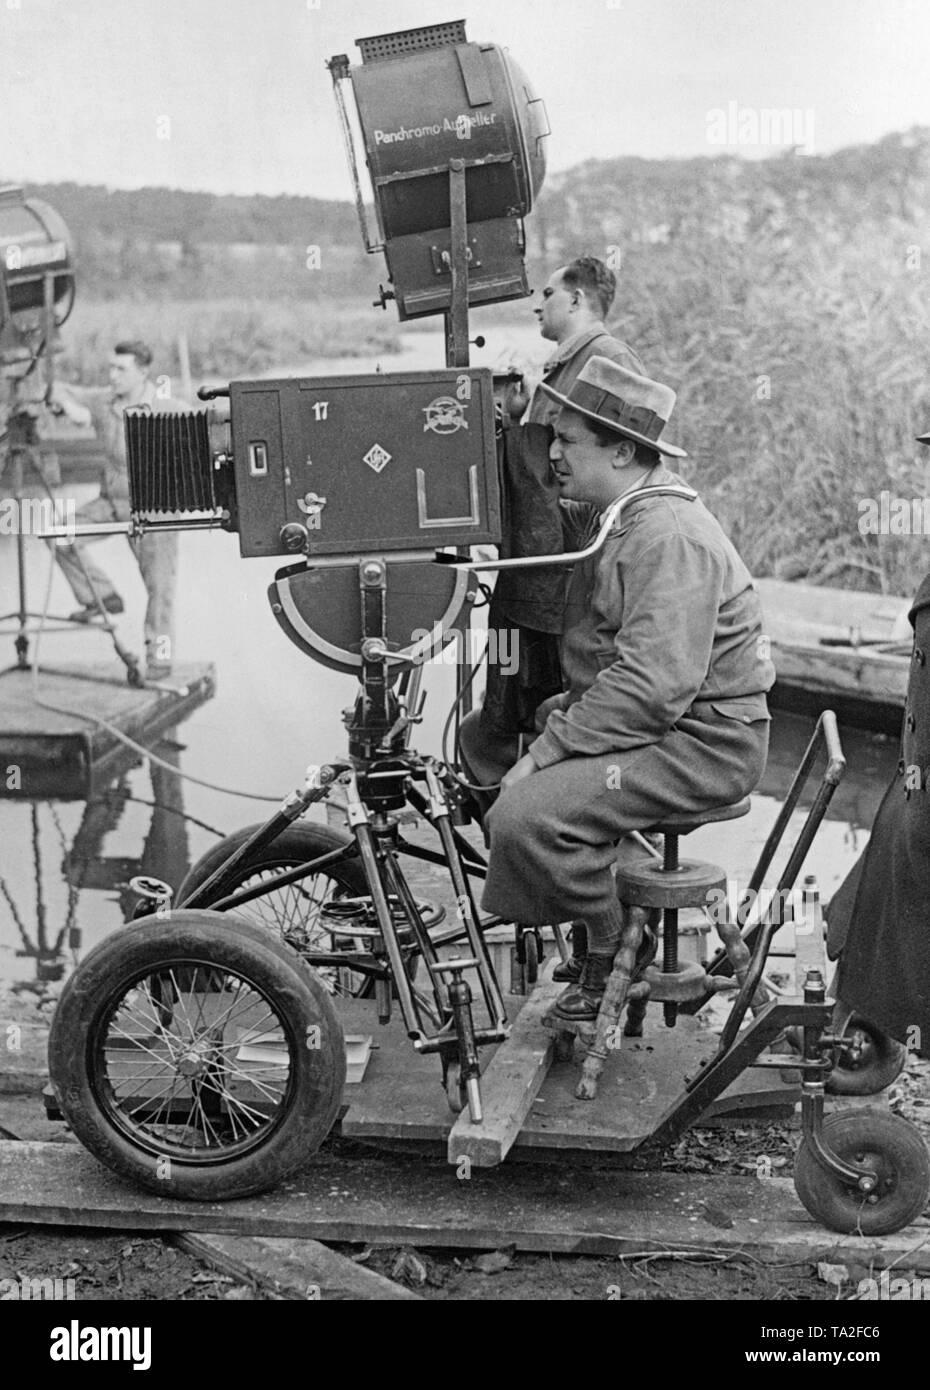 Foto von einem Kameramann Shooting der Film "Der Zigeunerbaron", unter der Regie von Karl Hartl. Der Kameramann sitzt auf ein vierrädriges Fahrzeug auf Schienen betrieben. Die Kamera selbst ist auch dieses Fahrzeug mit einem Stativ montiert, so dass sie mobil sind. Stockfoto